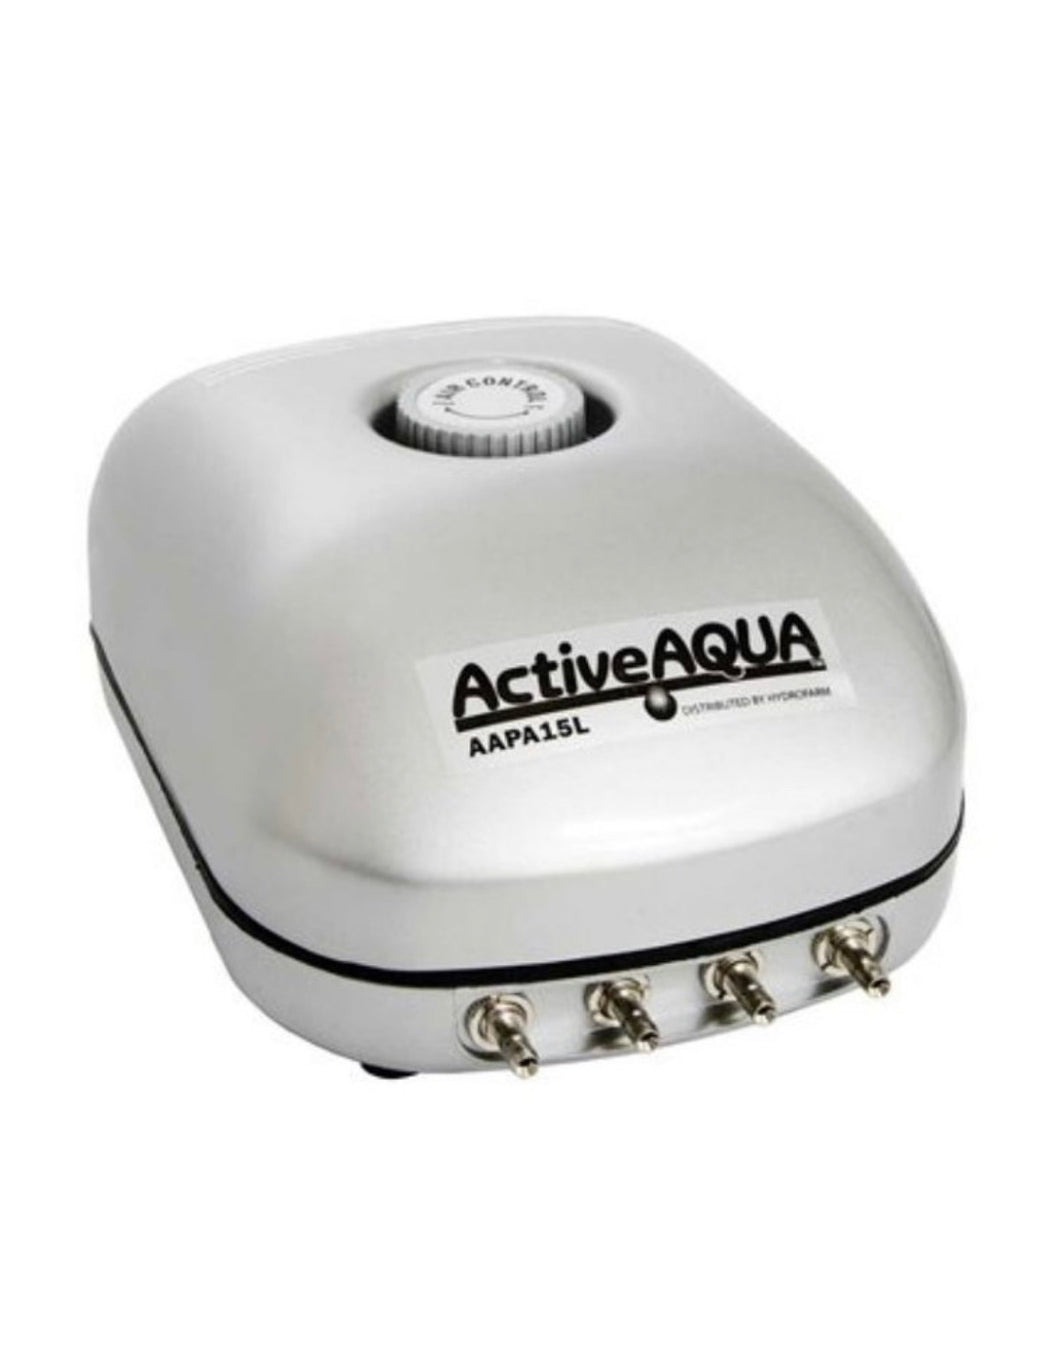 Active Aqua - Hydro Culture Air Pump 15